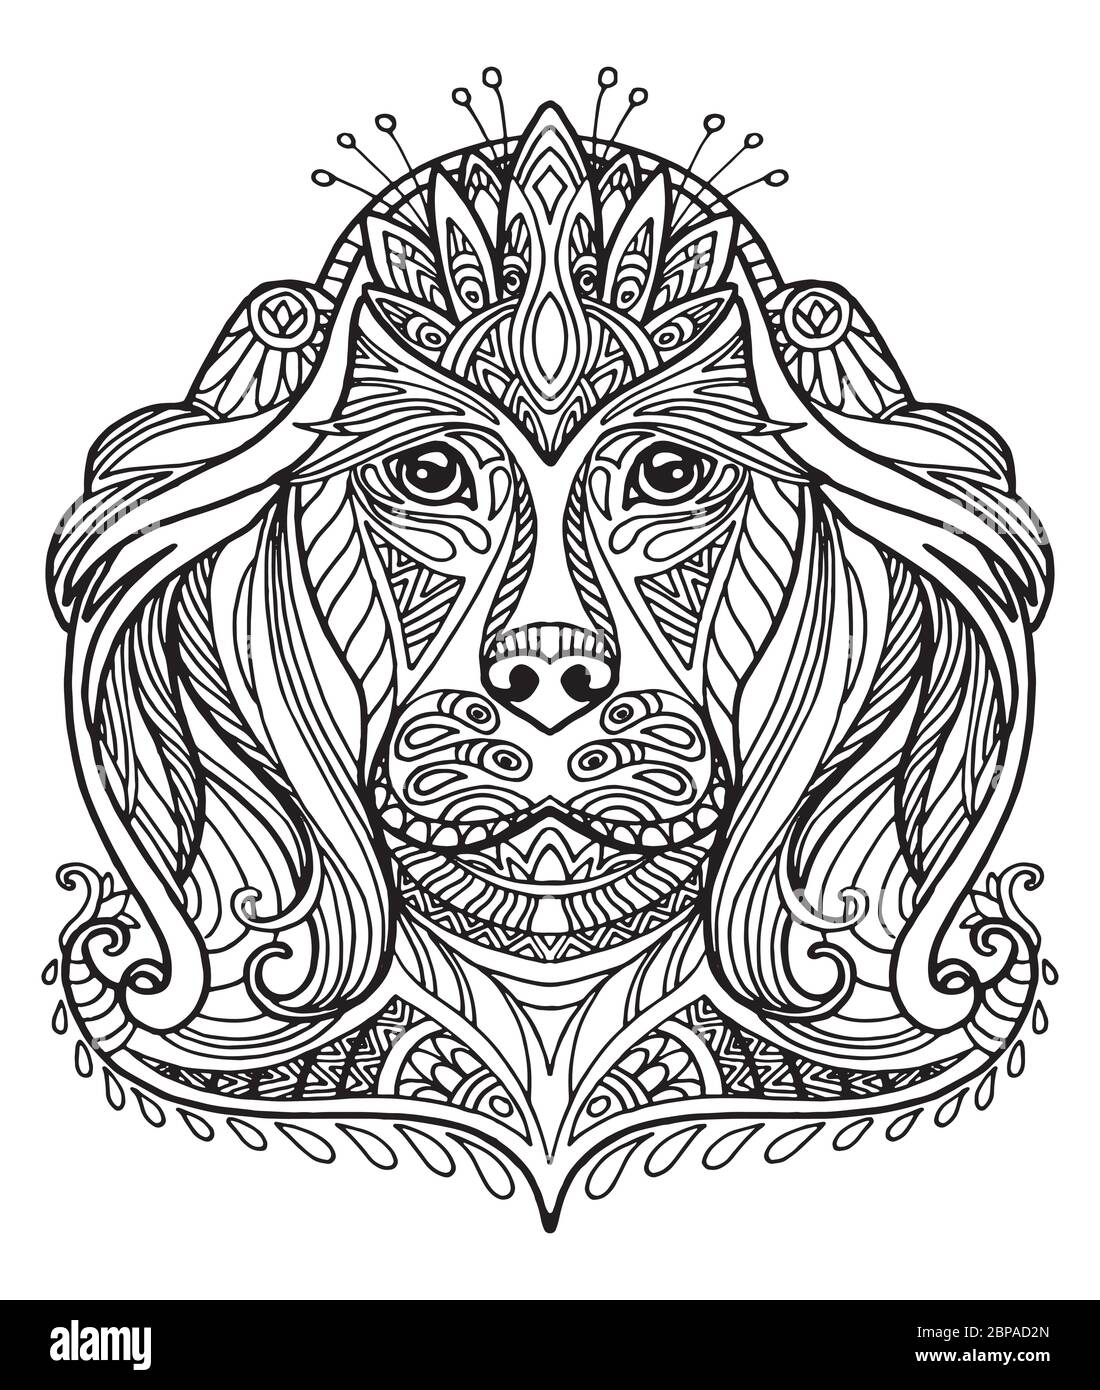 Vettore decorativo doodle testa ornamentale del cane. Illustrazione vettoriale astratta del contorno nero del cane isolato su sfondo bianco. Illustrazione del magazzino per Illustrazione Vettoriale